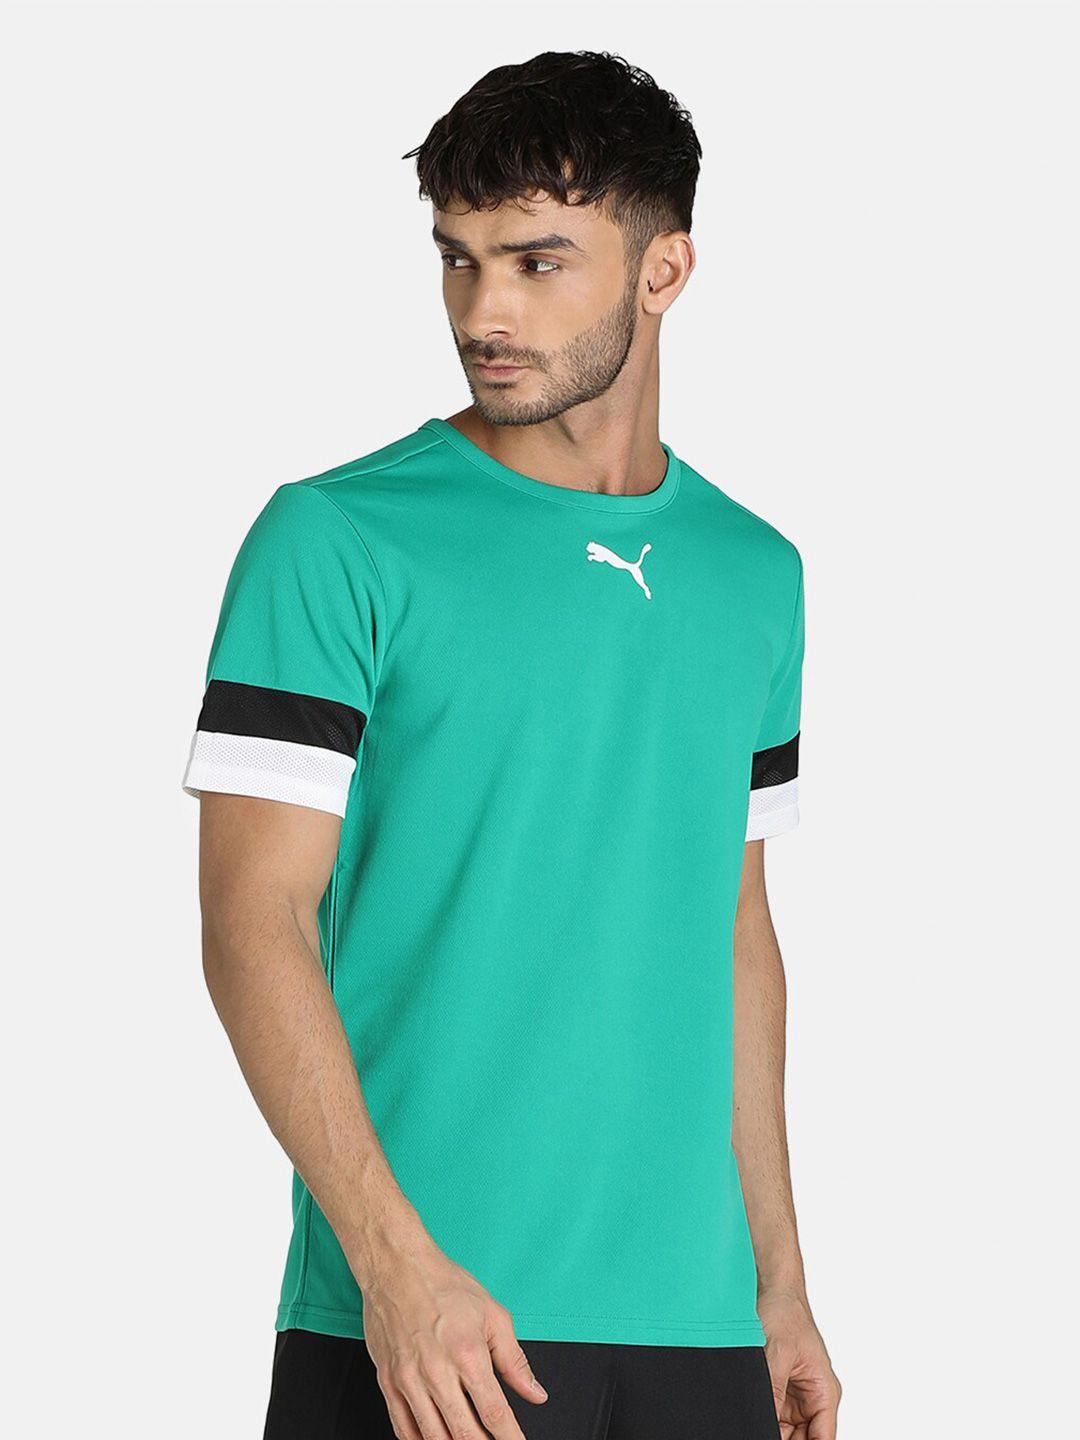 puma-men-green-t-shirt